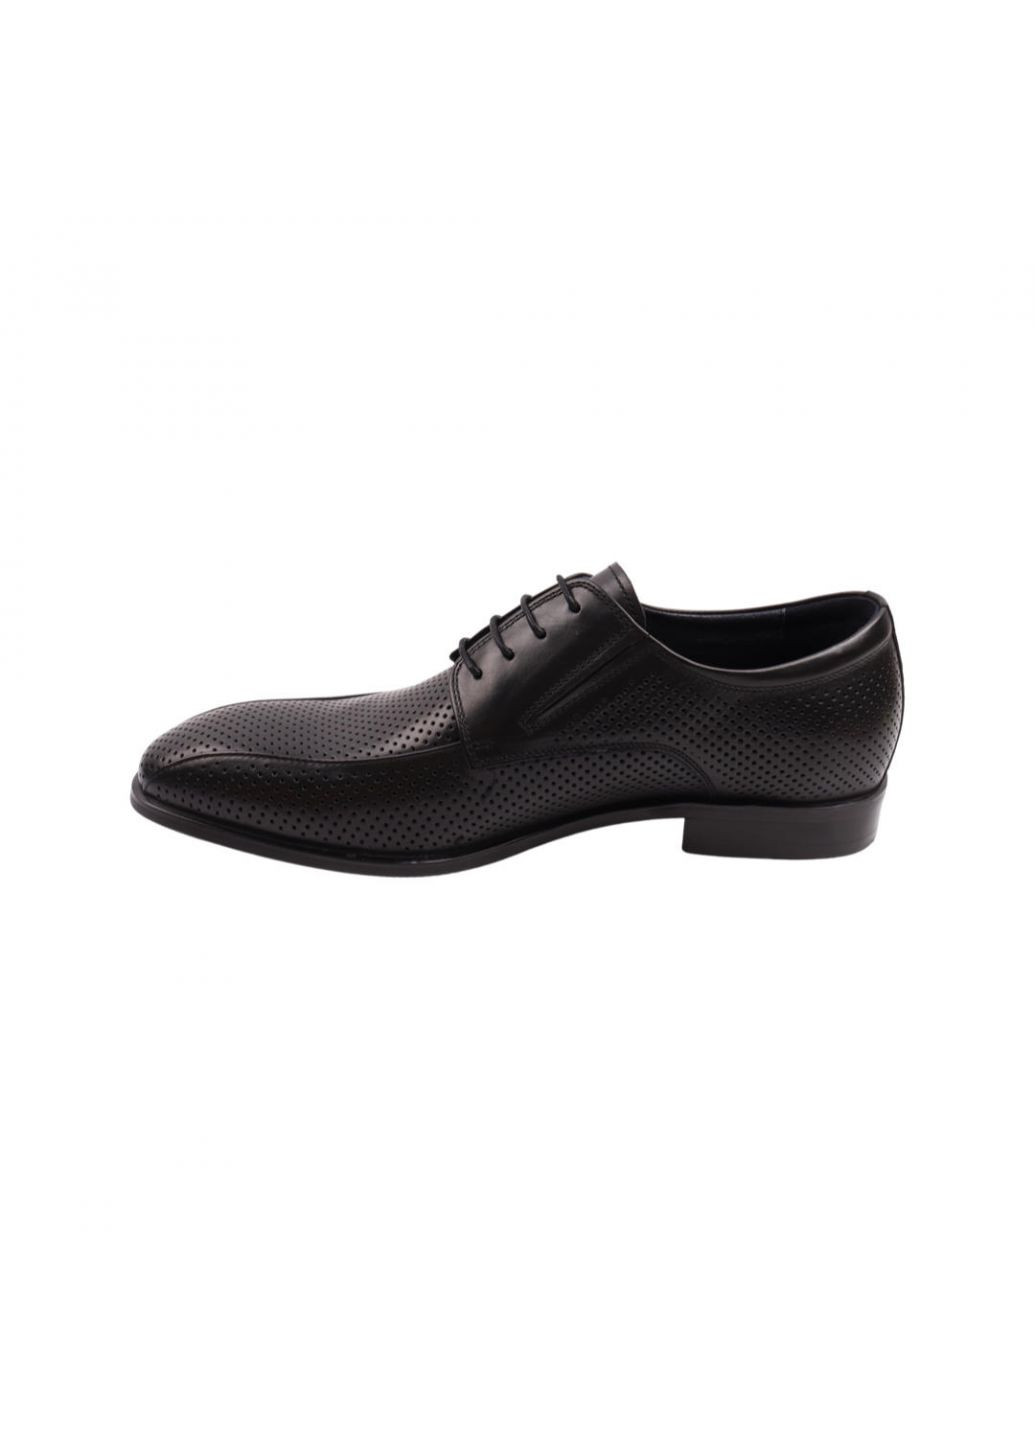 Туфлі чоловічі Lido Marinozi чорні натуральна шкіра Lido Marinozzi 275-22ltp (257439913)